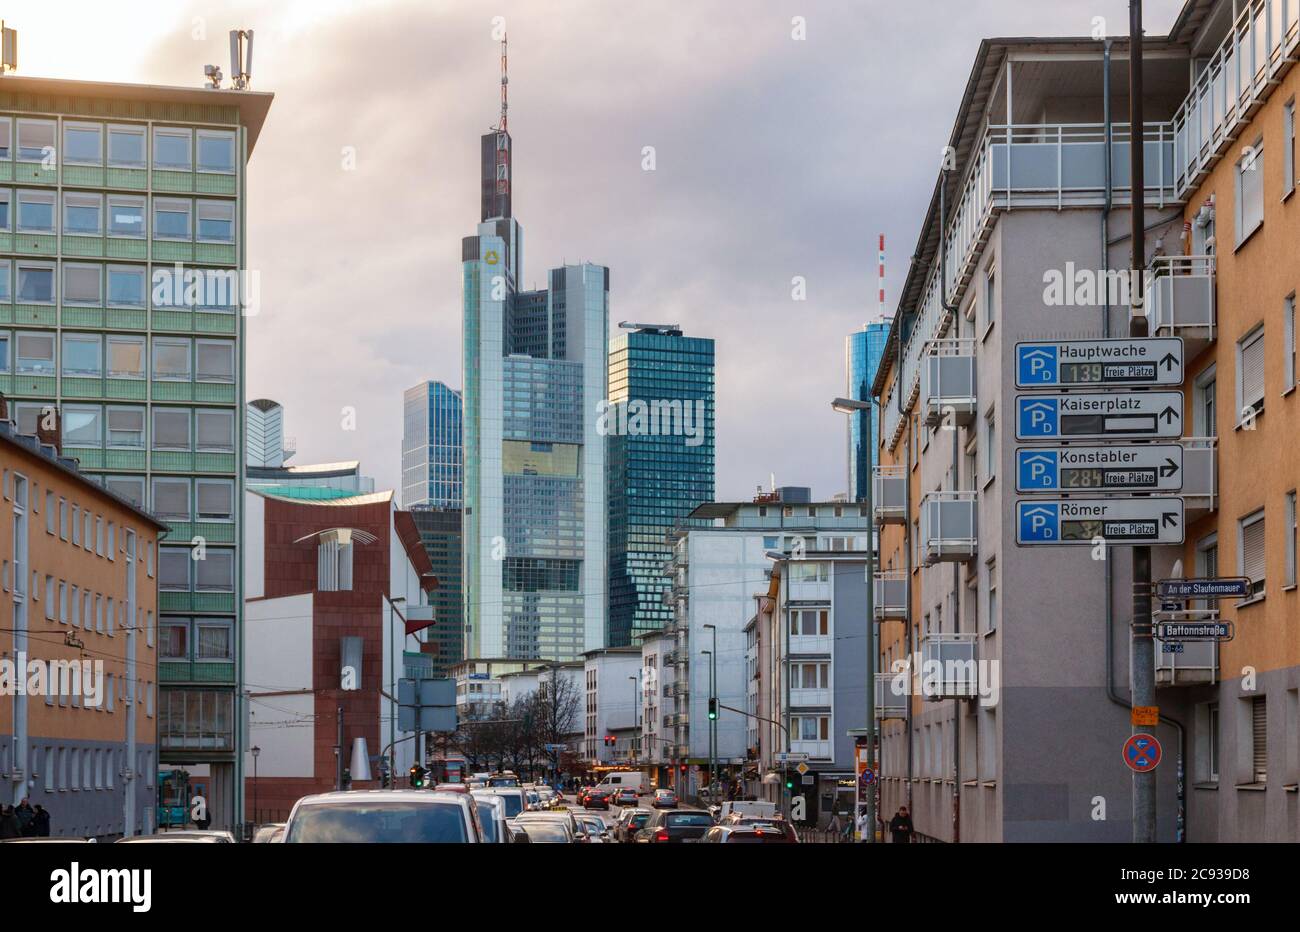 Battonstrasse, Frankfurt am Main. Ver Commerzbank Tower, parte del Bankenviertel (distrito central de negocios). Alemania. Foto de stock